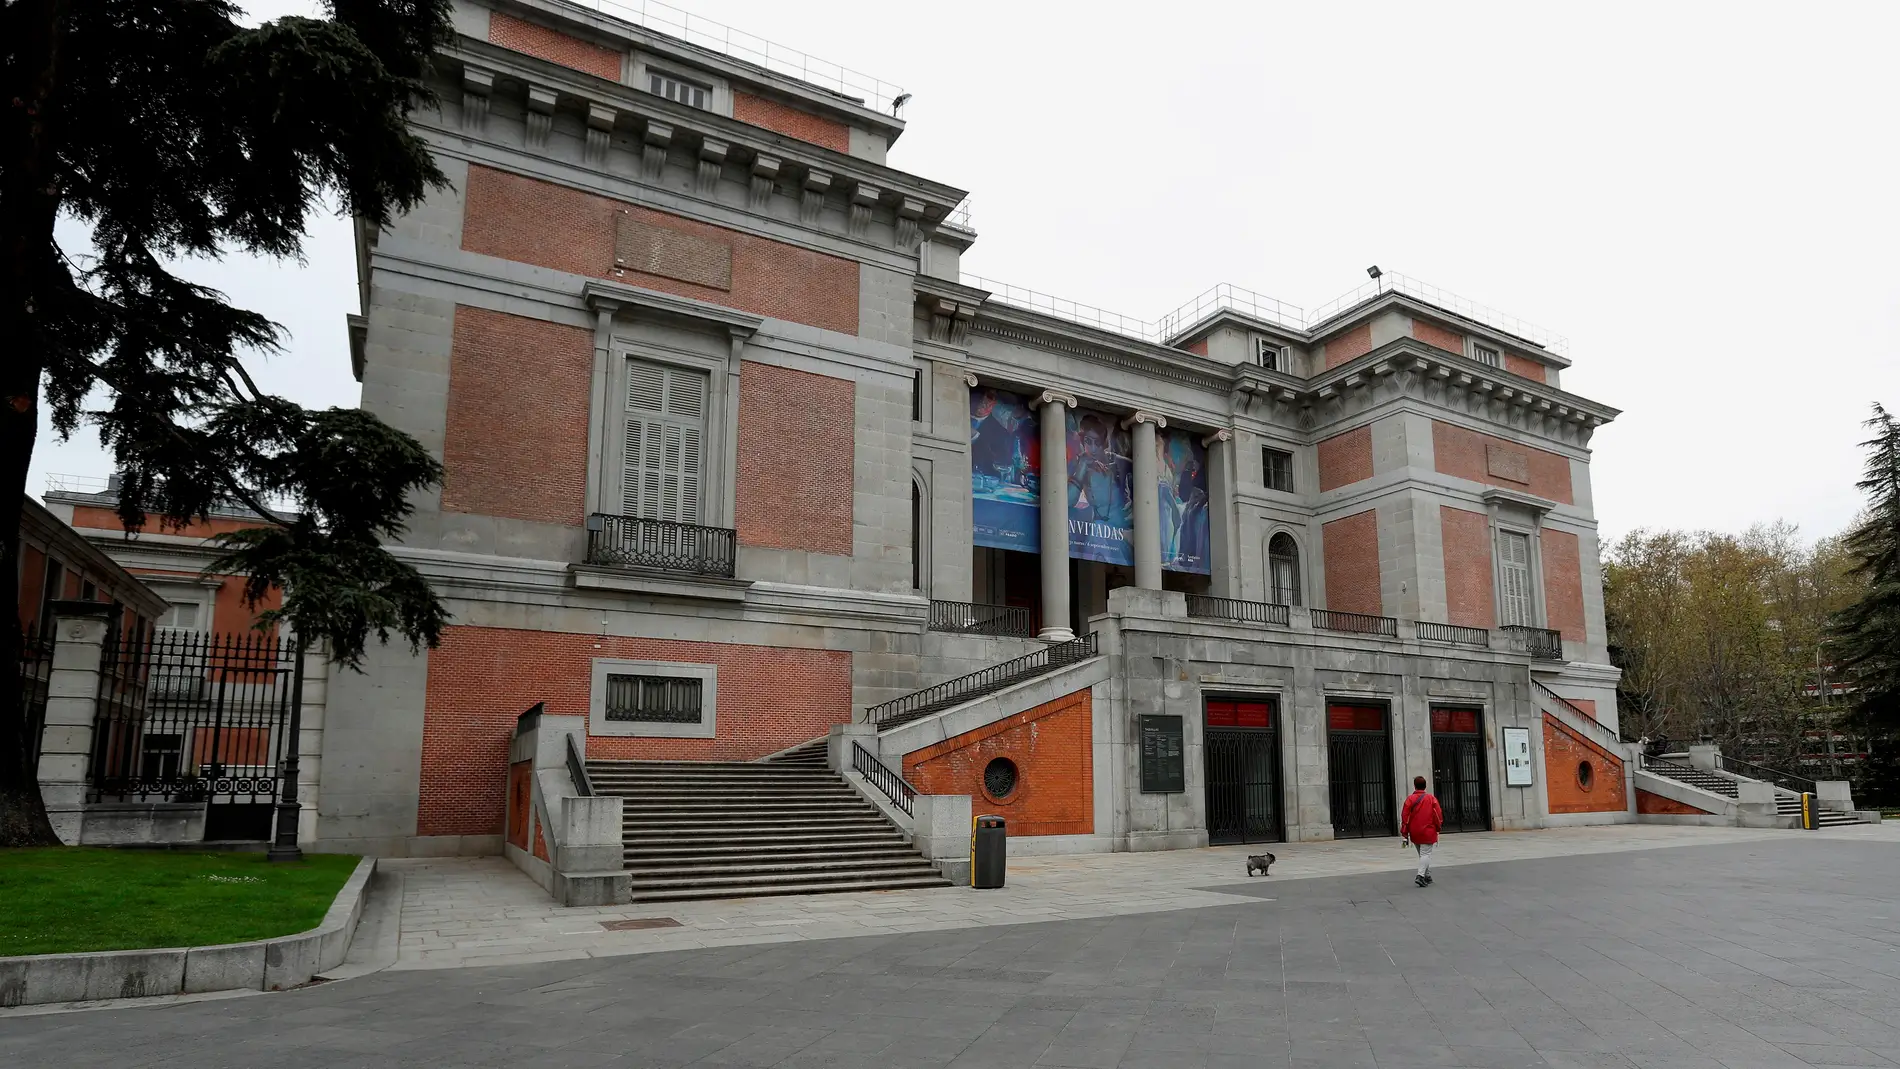 Fachada del Museo del Prado de Madrid